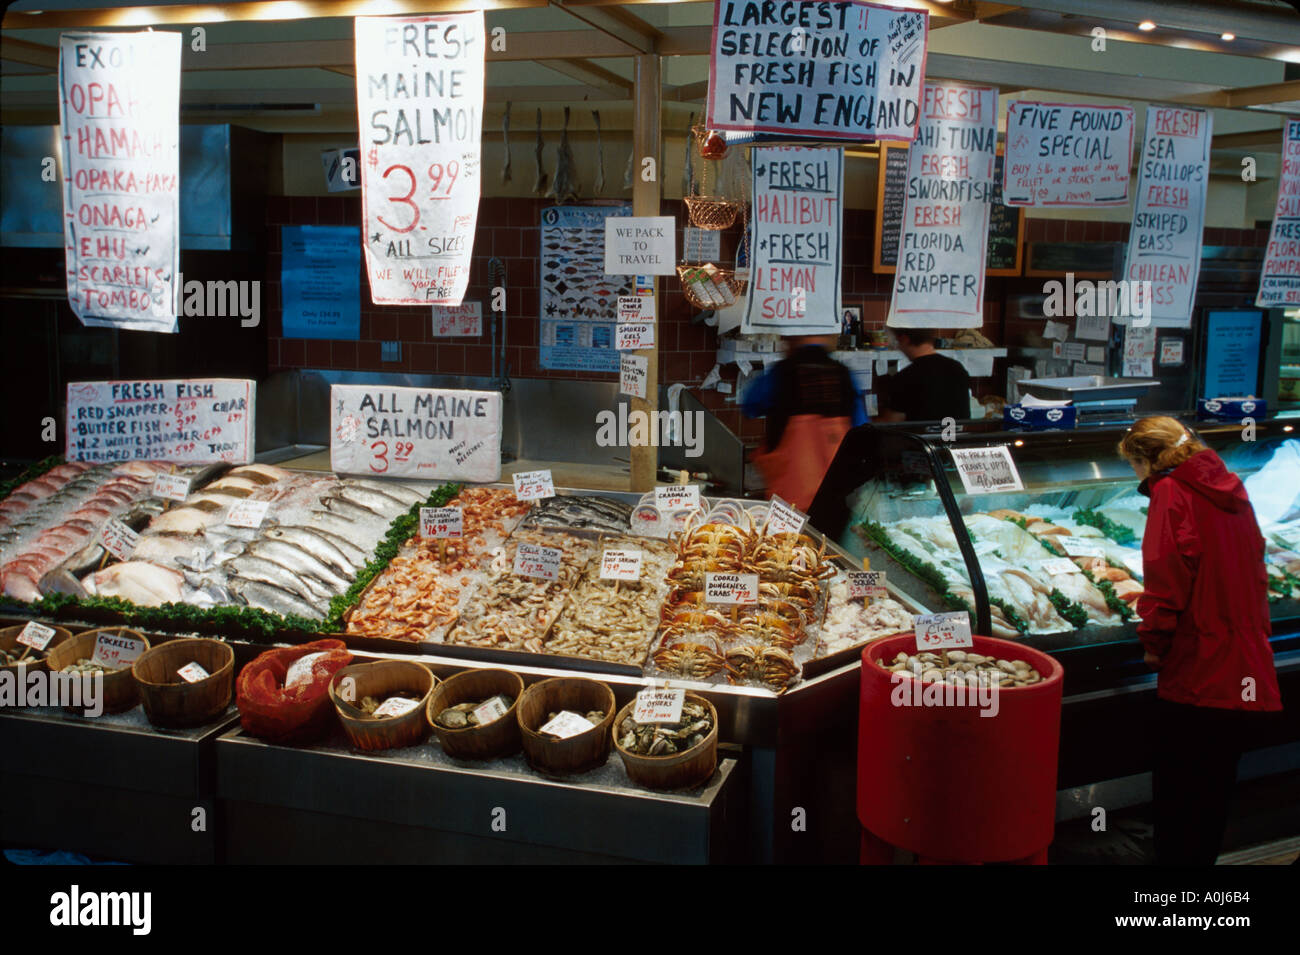 Portland Maine, mercato pubblico Hanson Brothers Fresh Seafood Shopper ME143,ME143 Foto Stock